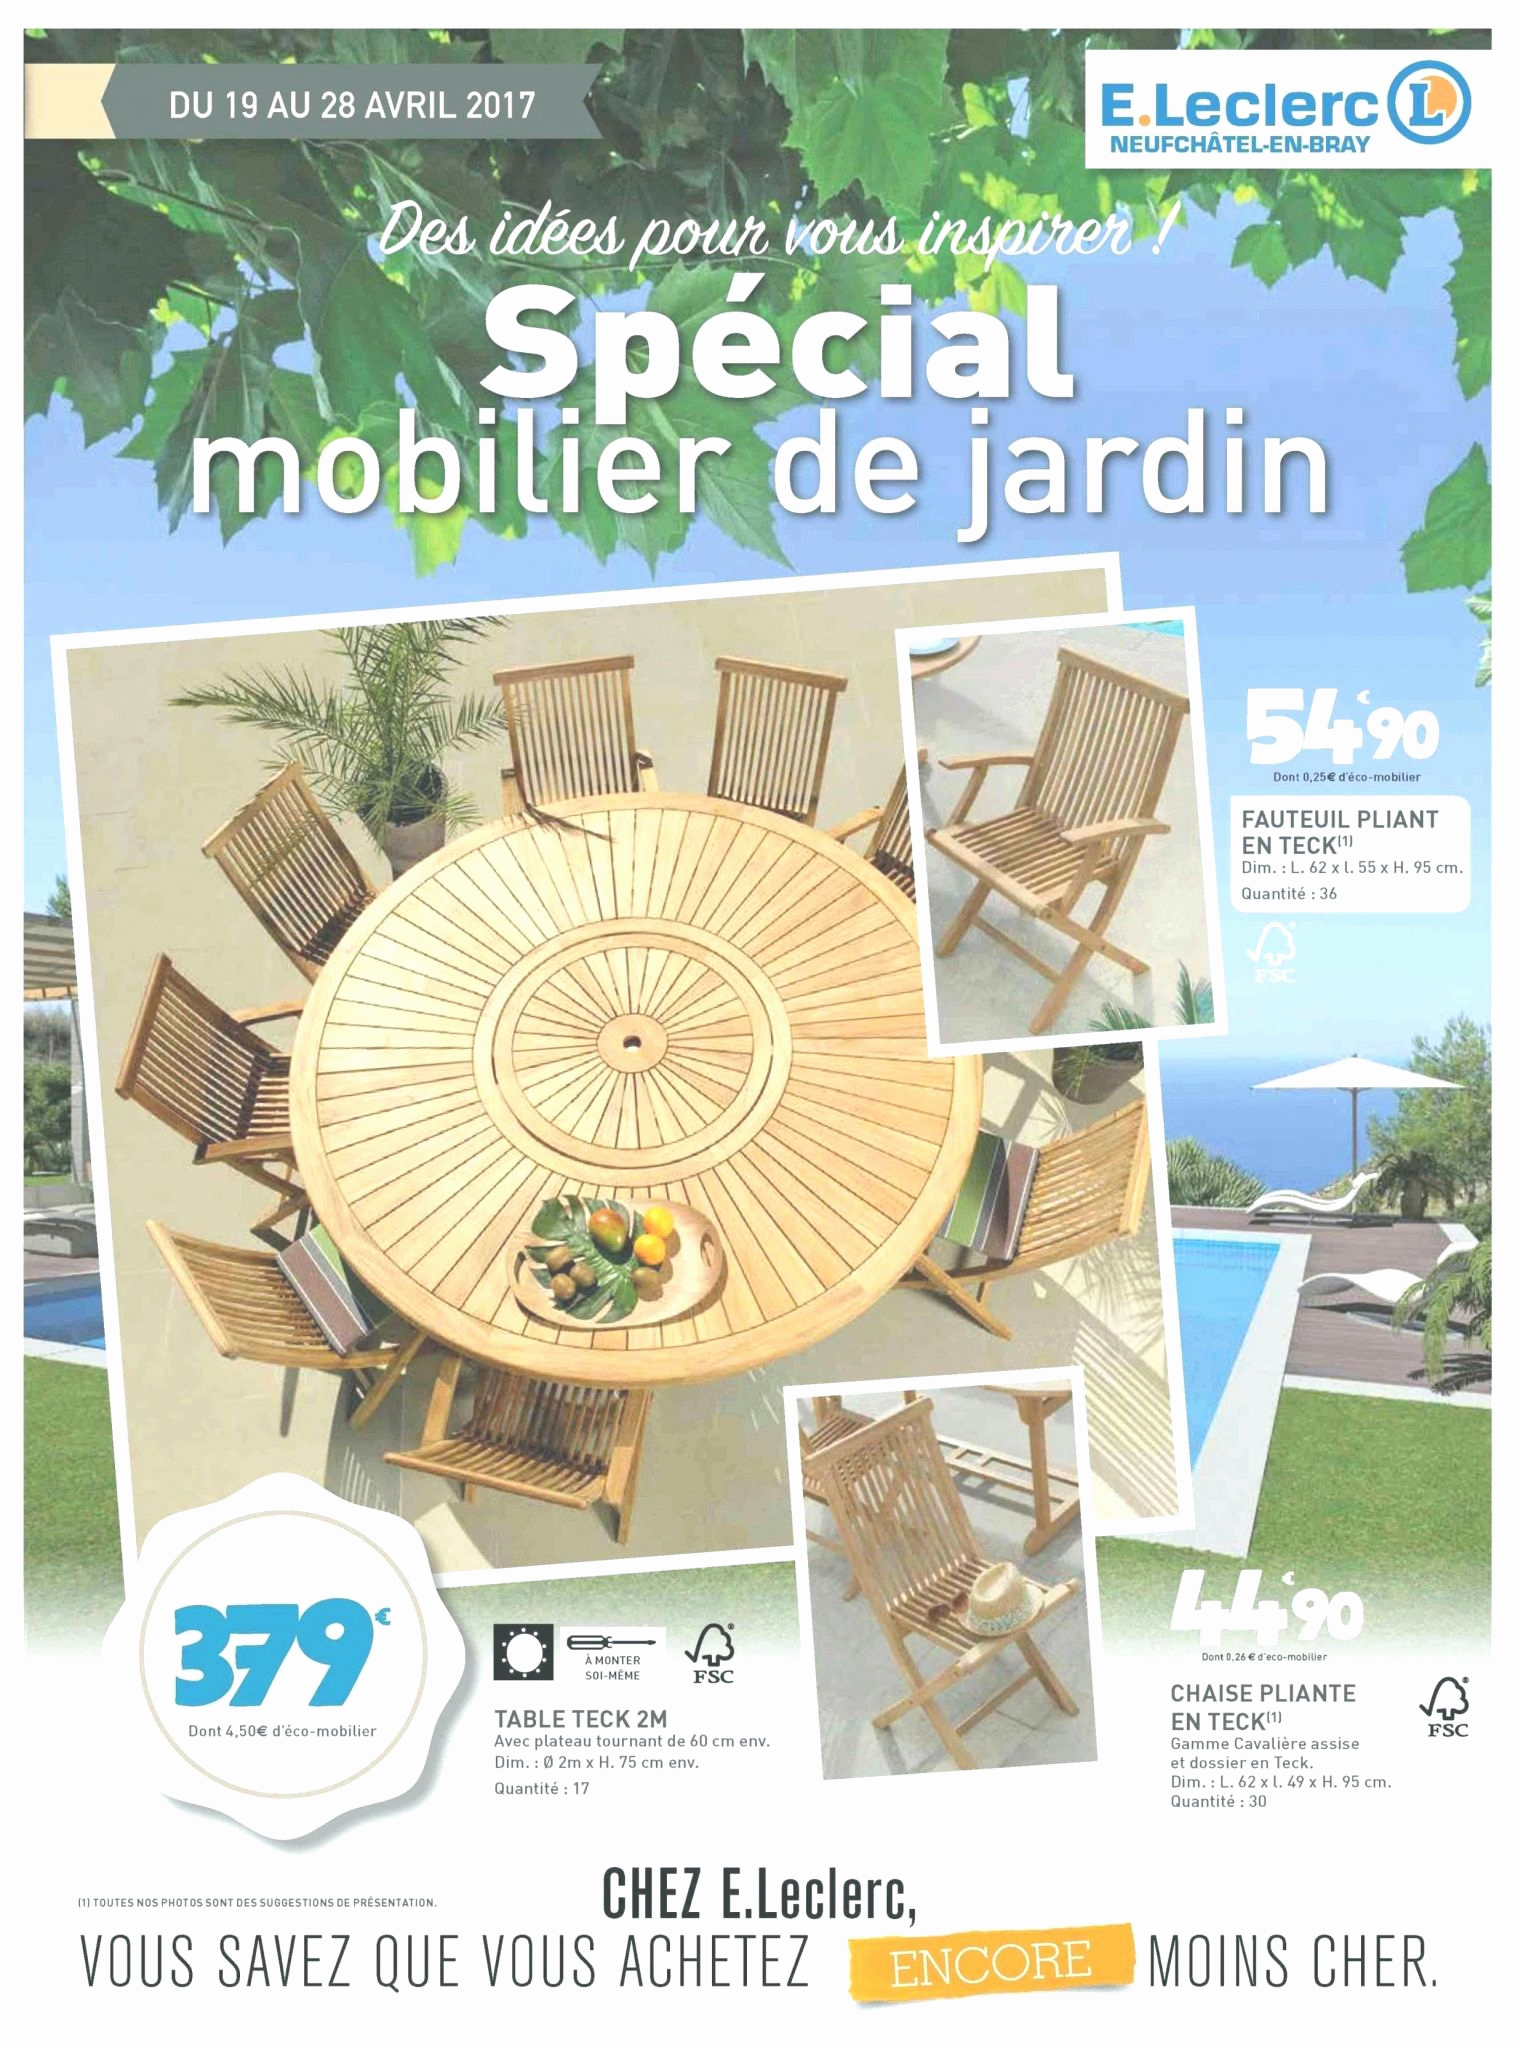 Salon De Jardin 2 Places Pas Cher Best Of Salon De Jardin Leclerc Catalogue 2017 Le Meilleur De Table